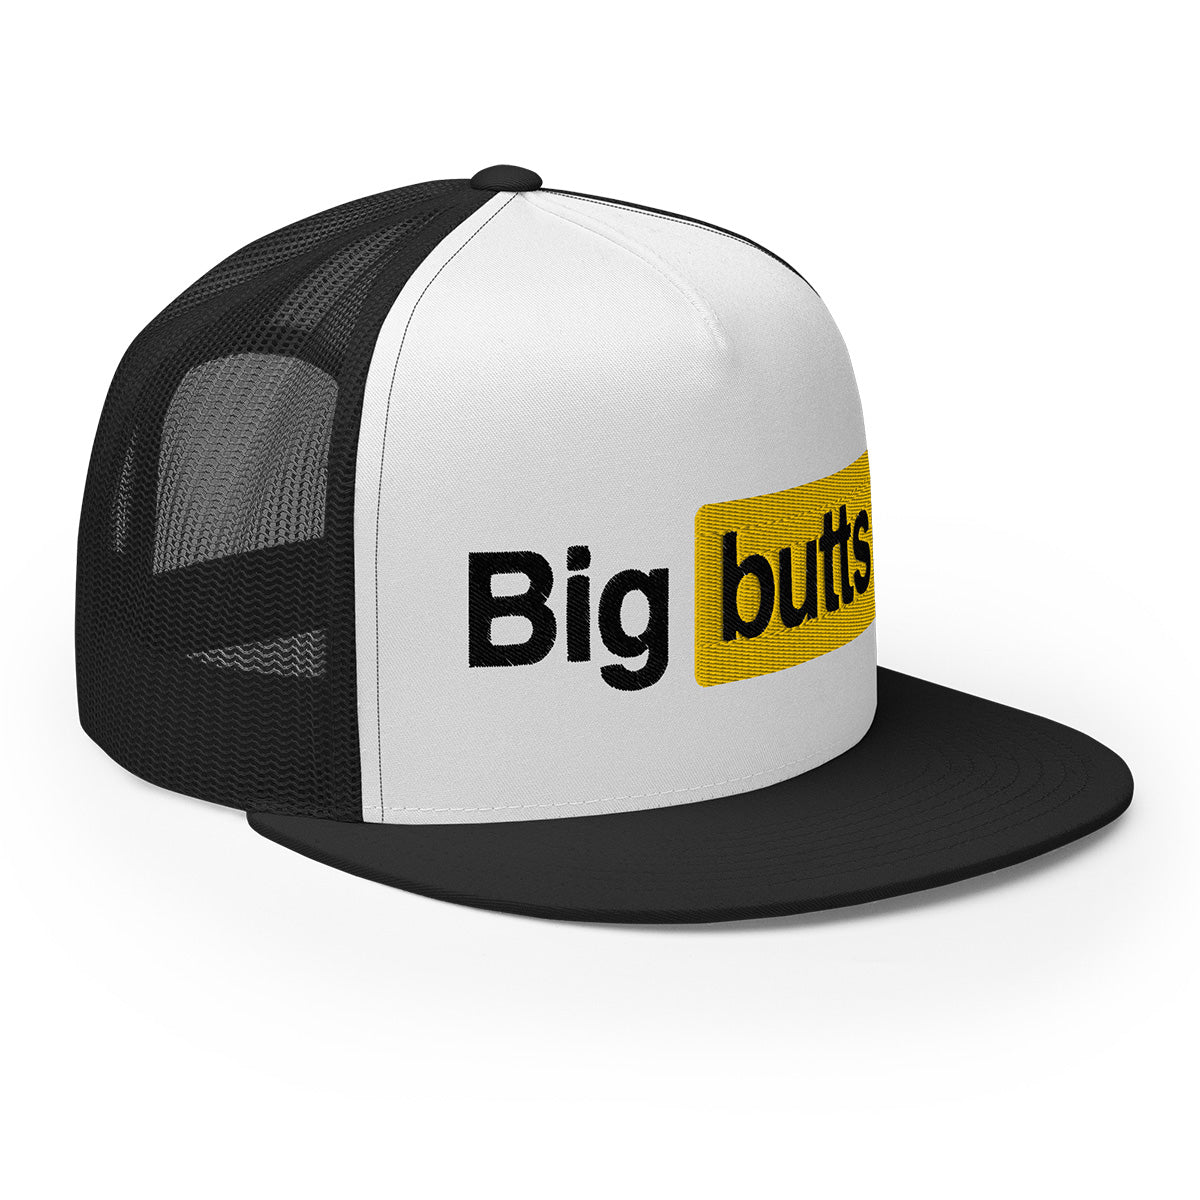 Big Butts Trucker Cap